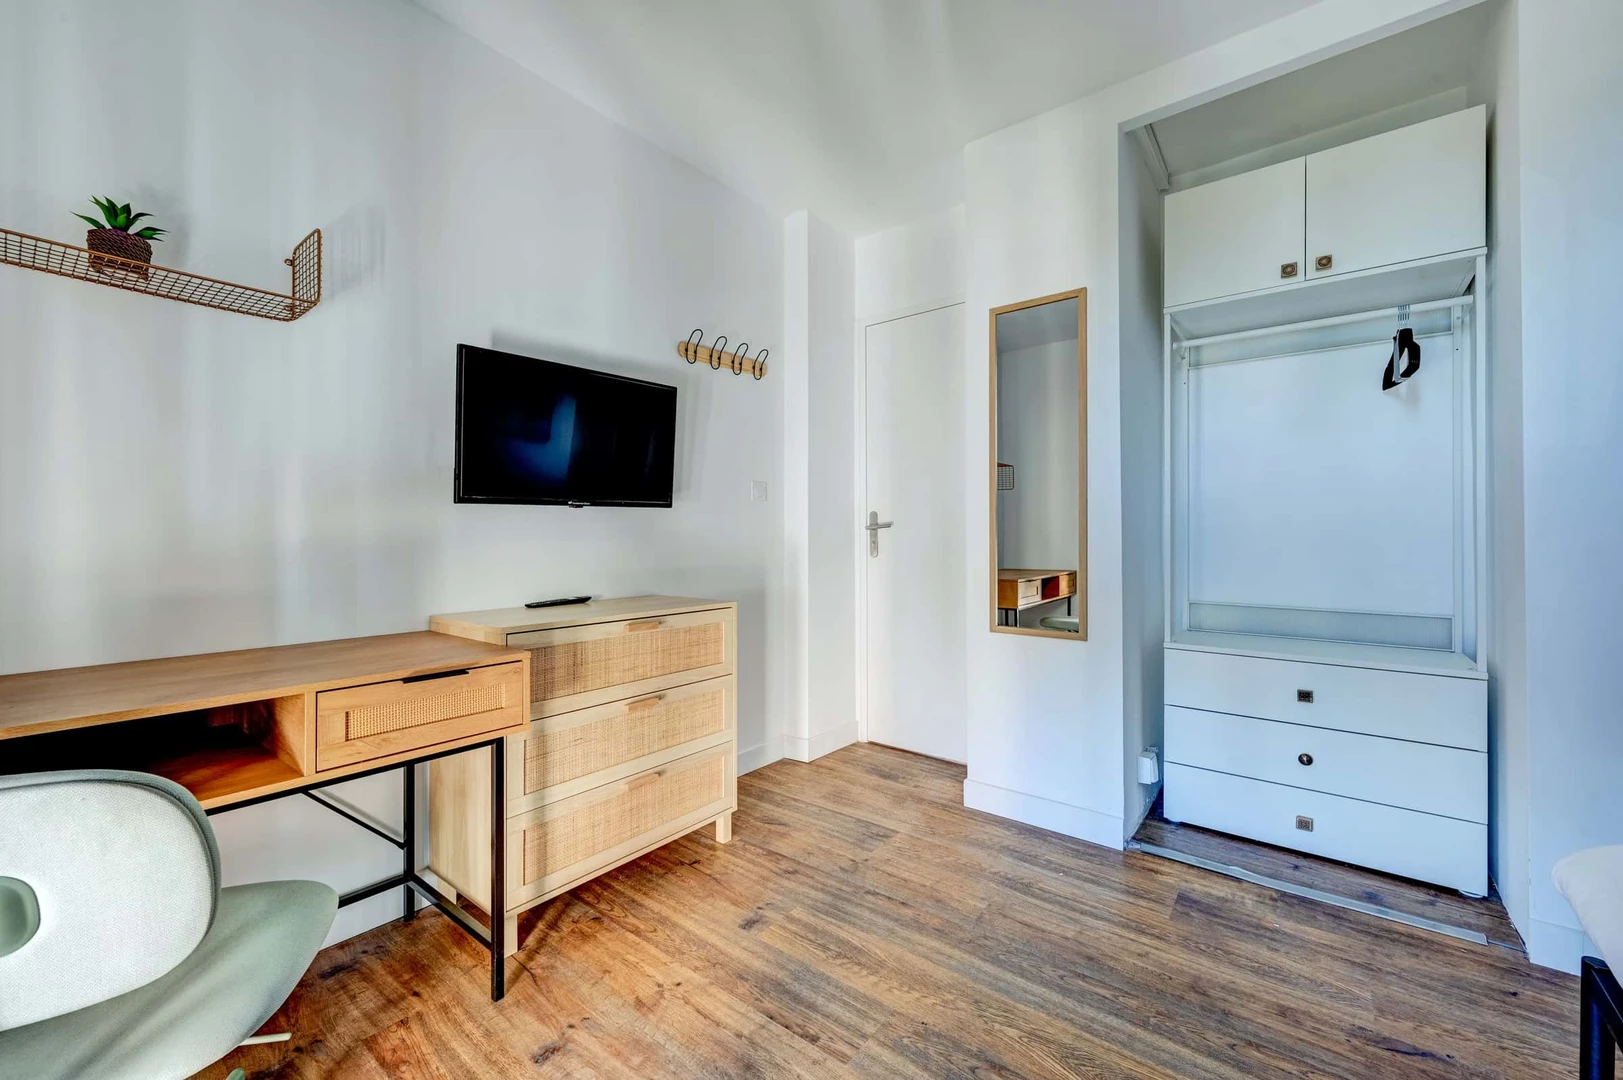 Apartamento moderno e brilhante em Marselha